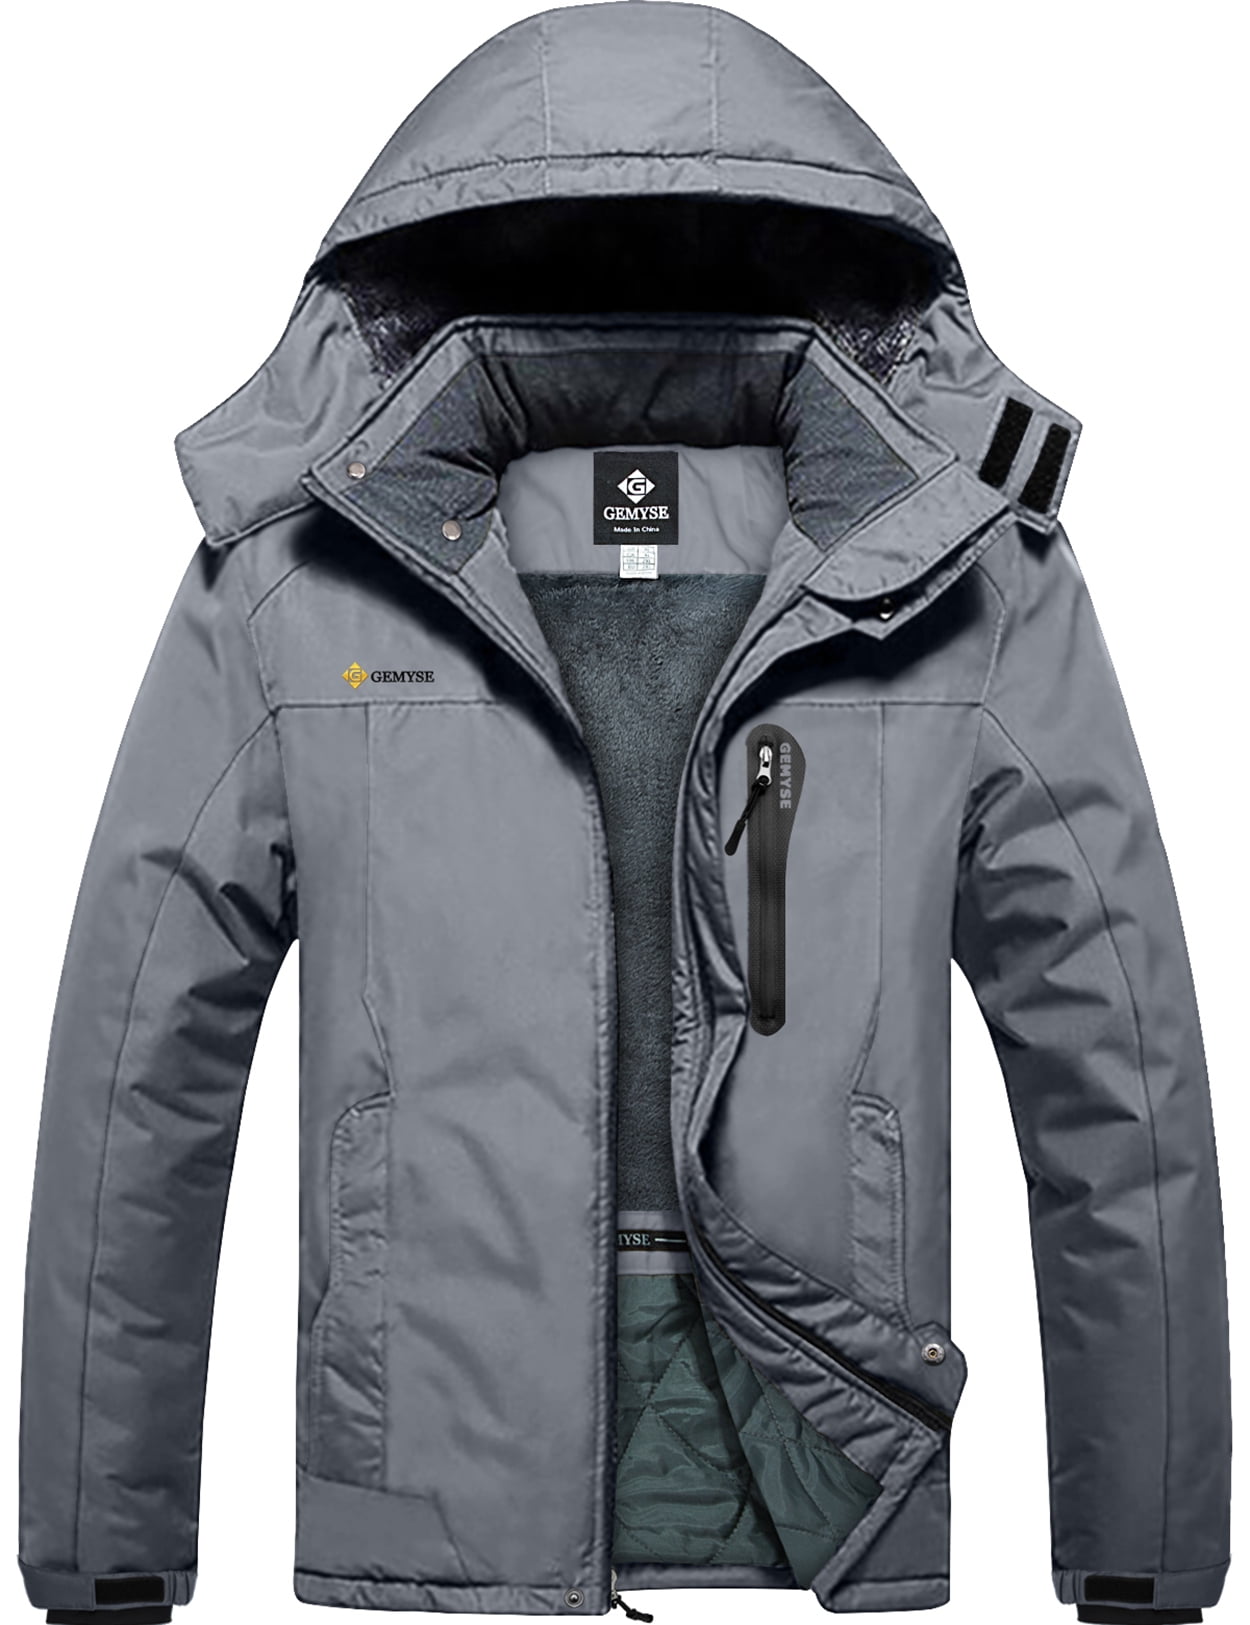 GEMYSE Womens Mountain Waterproof Ski Jacket Windproof Fleece Outdoor Winter Coat With Hood 